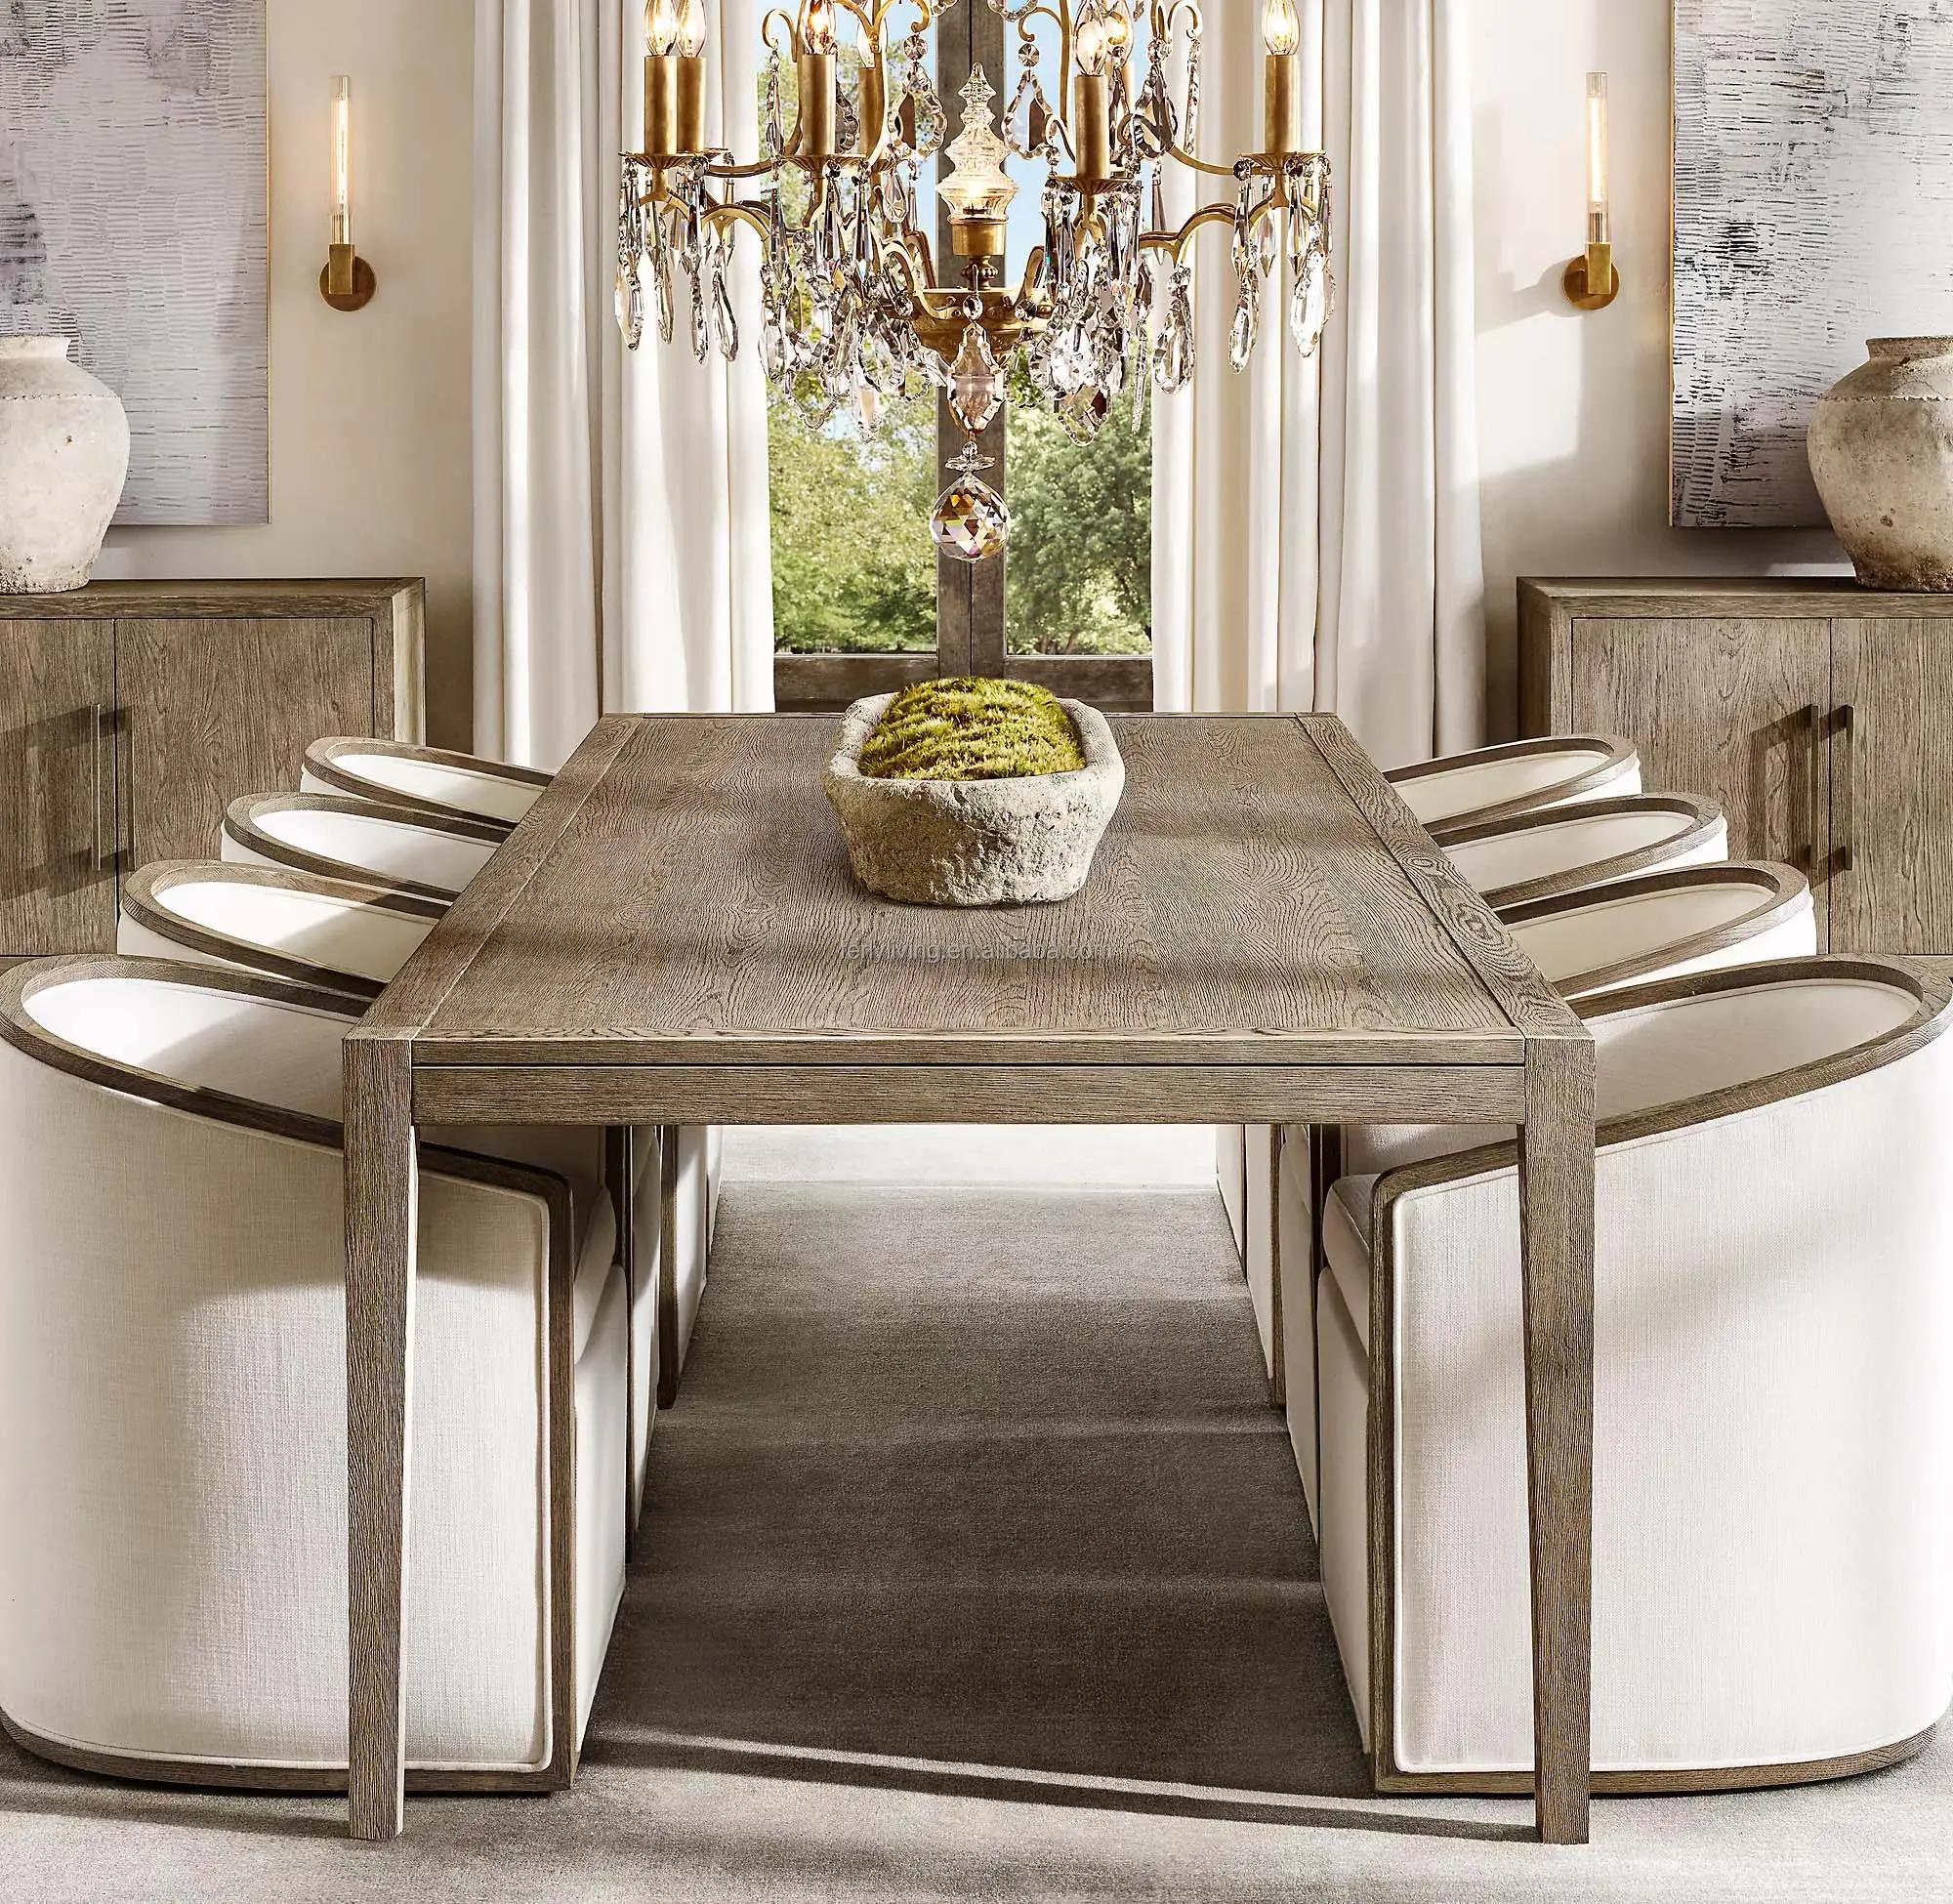 Мебель для кухни в простом дизайне во французском стиле, 8 предметов, прямоугольный деревянный стол и стулья, обеденный стол из массива дерева